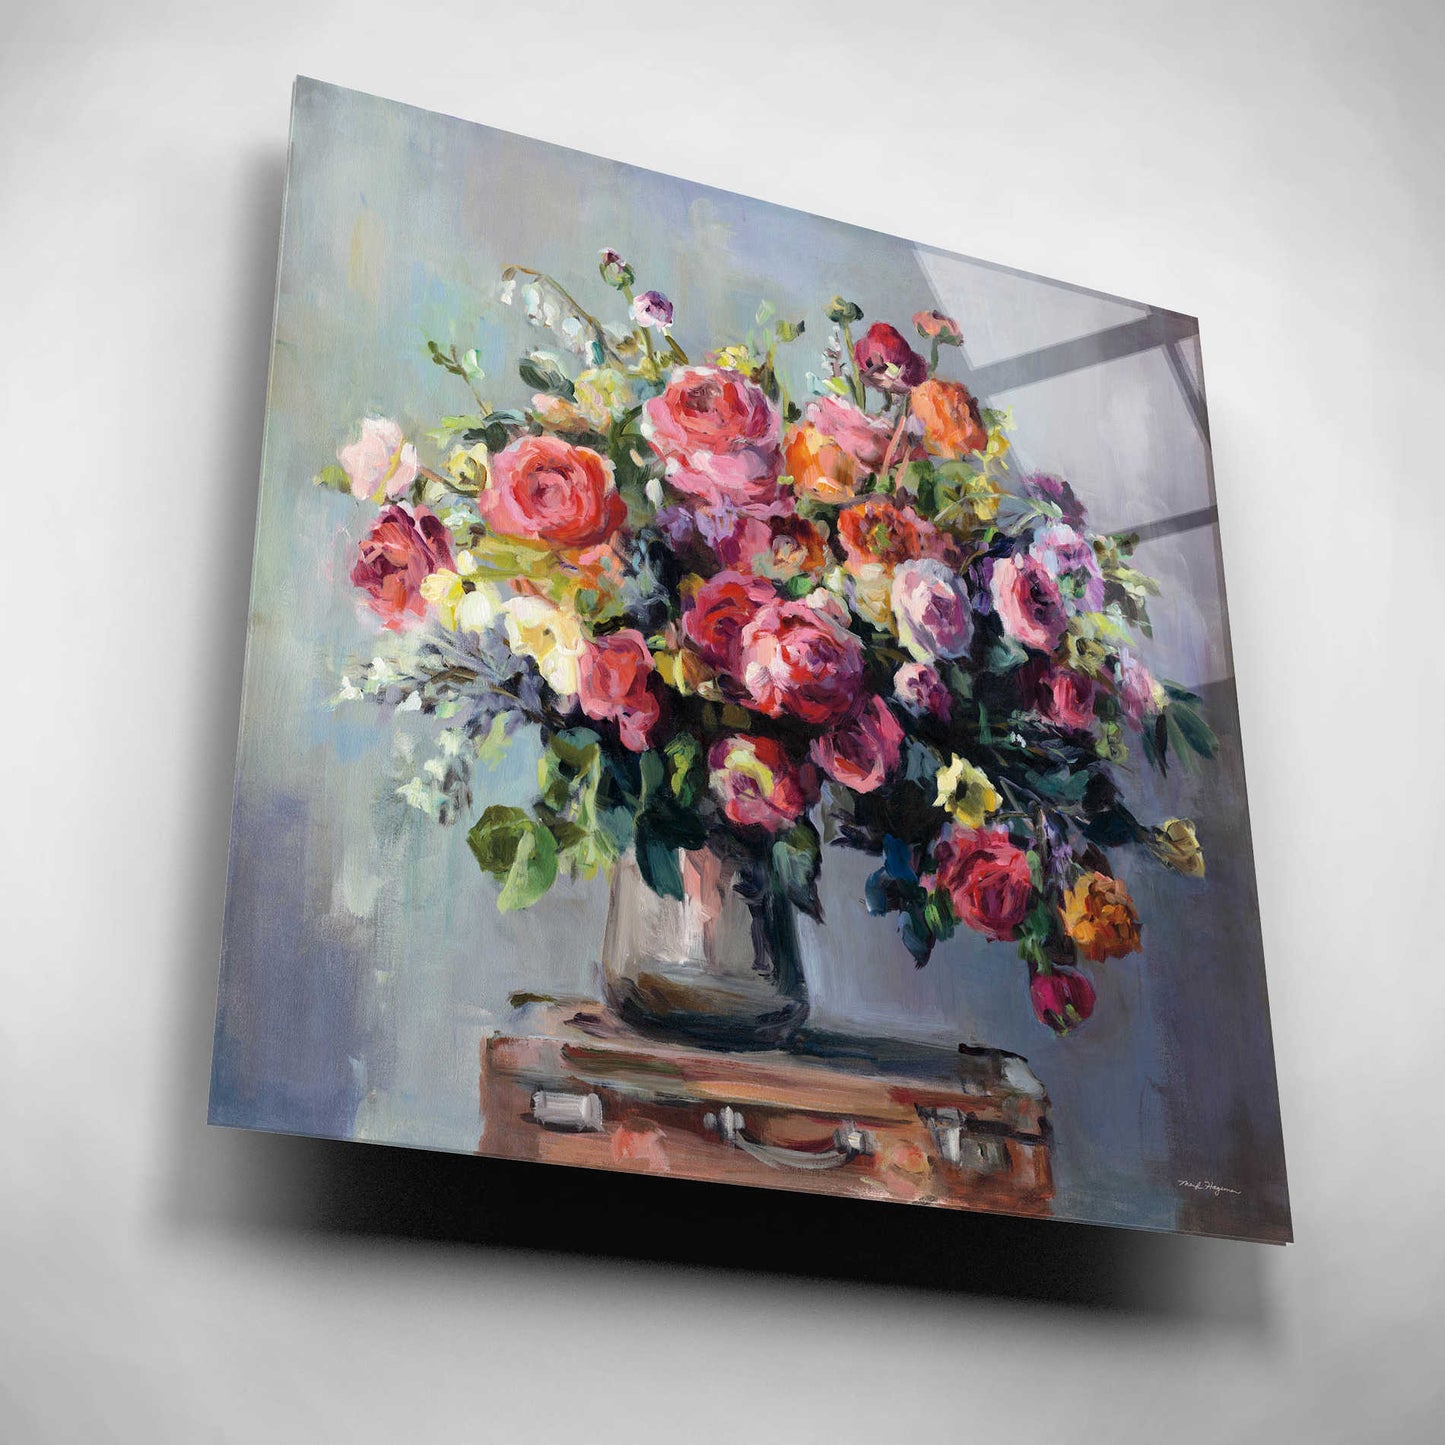 Epic Art 'Abundant Bouquet' by Marilyn Hageman, Acrylic Glass Wall Art,12x12